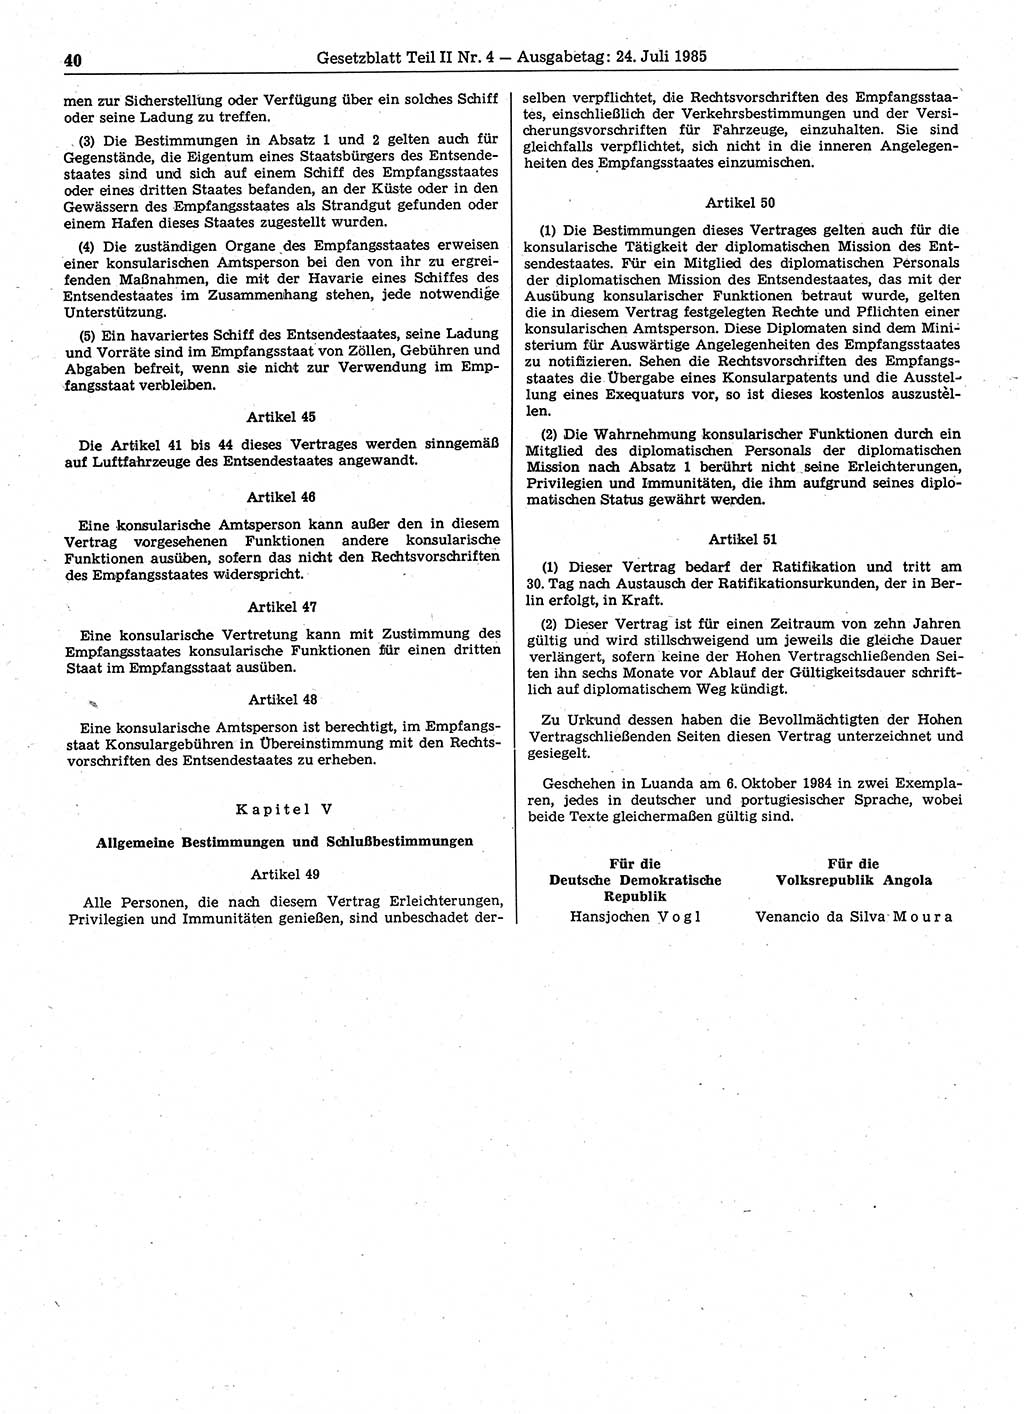 Gesetzblatt (GBl.) der Deutschen Demokratischen Republik (DDR) Teil ⅠⅠ 1985, Seite 40 (GBl. DDR ⅠⅠ 1985, S. 40)